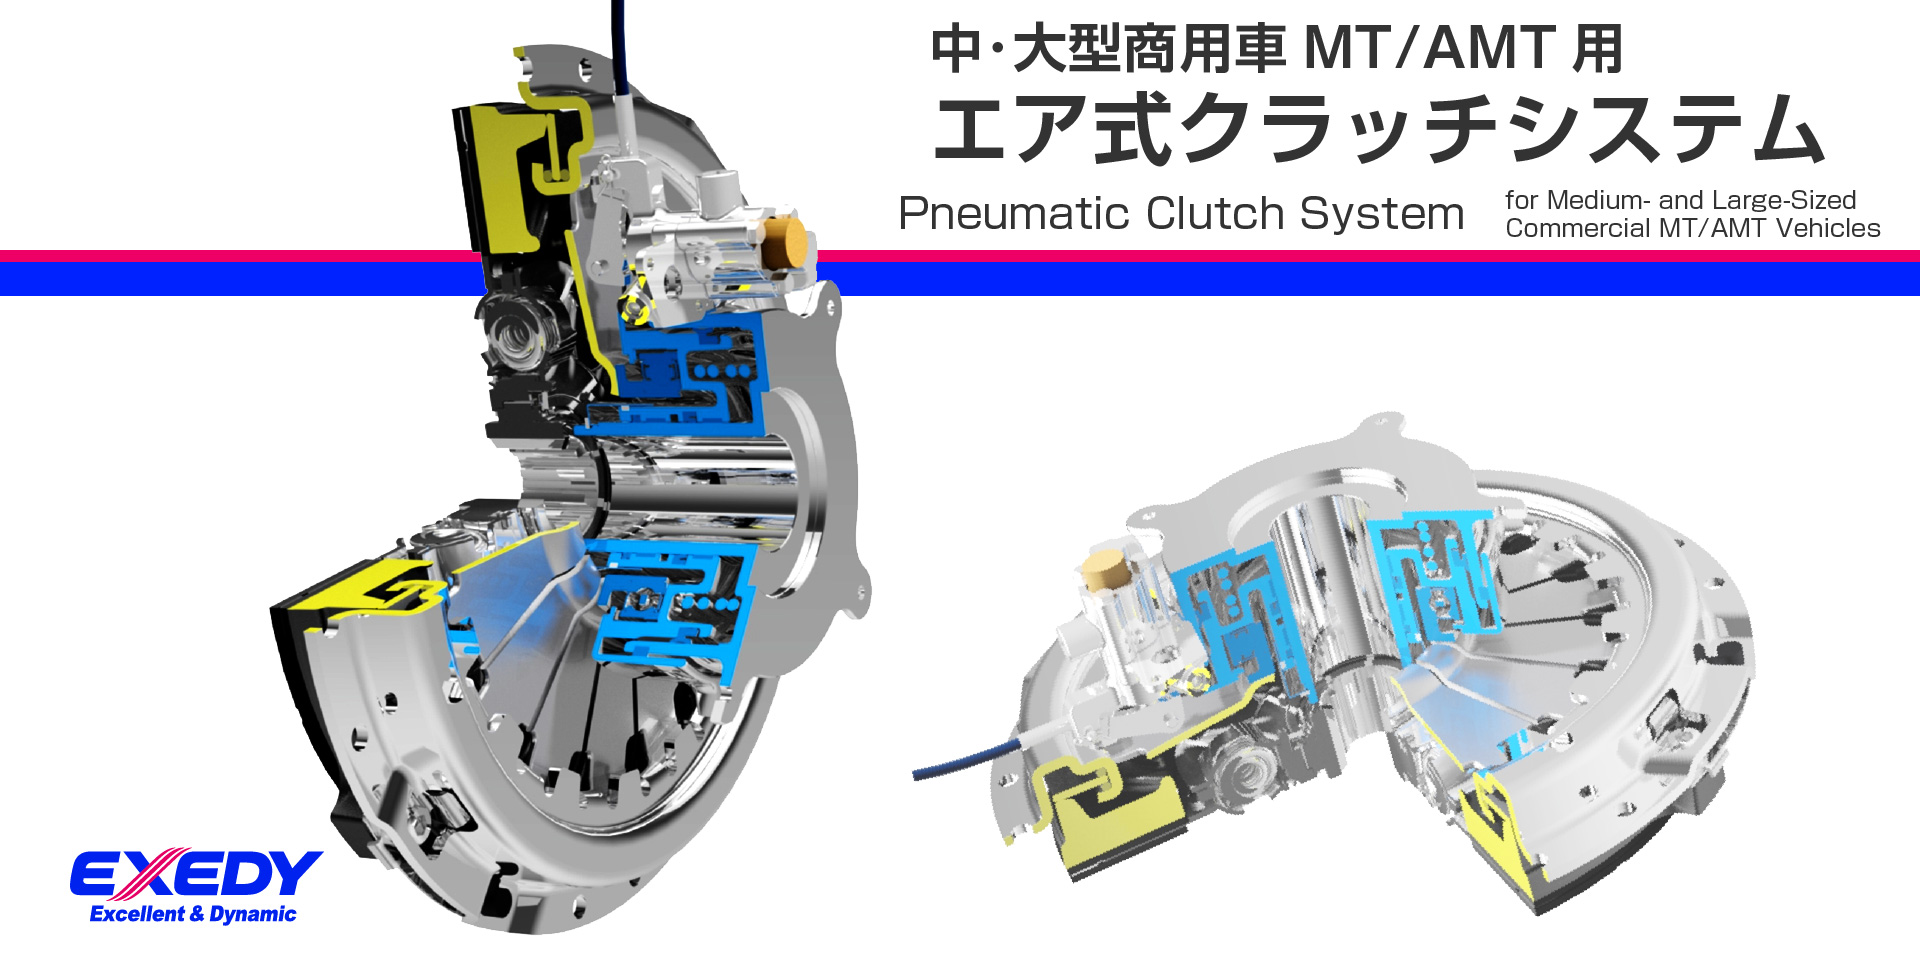 中･大型商用車MT/AMT用 エア式クラッチシステム